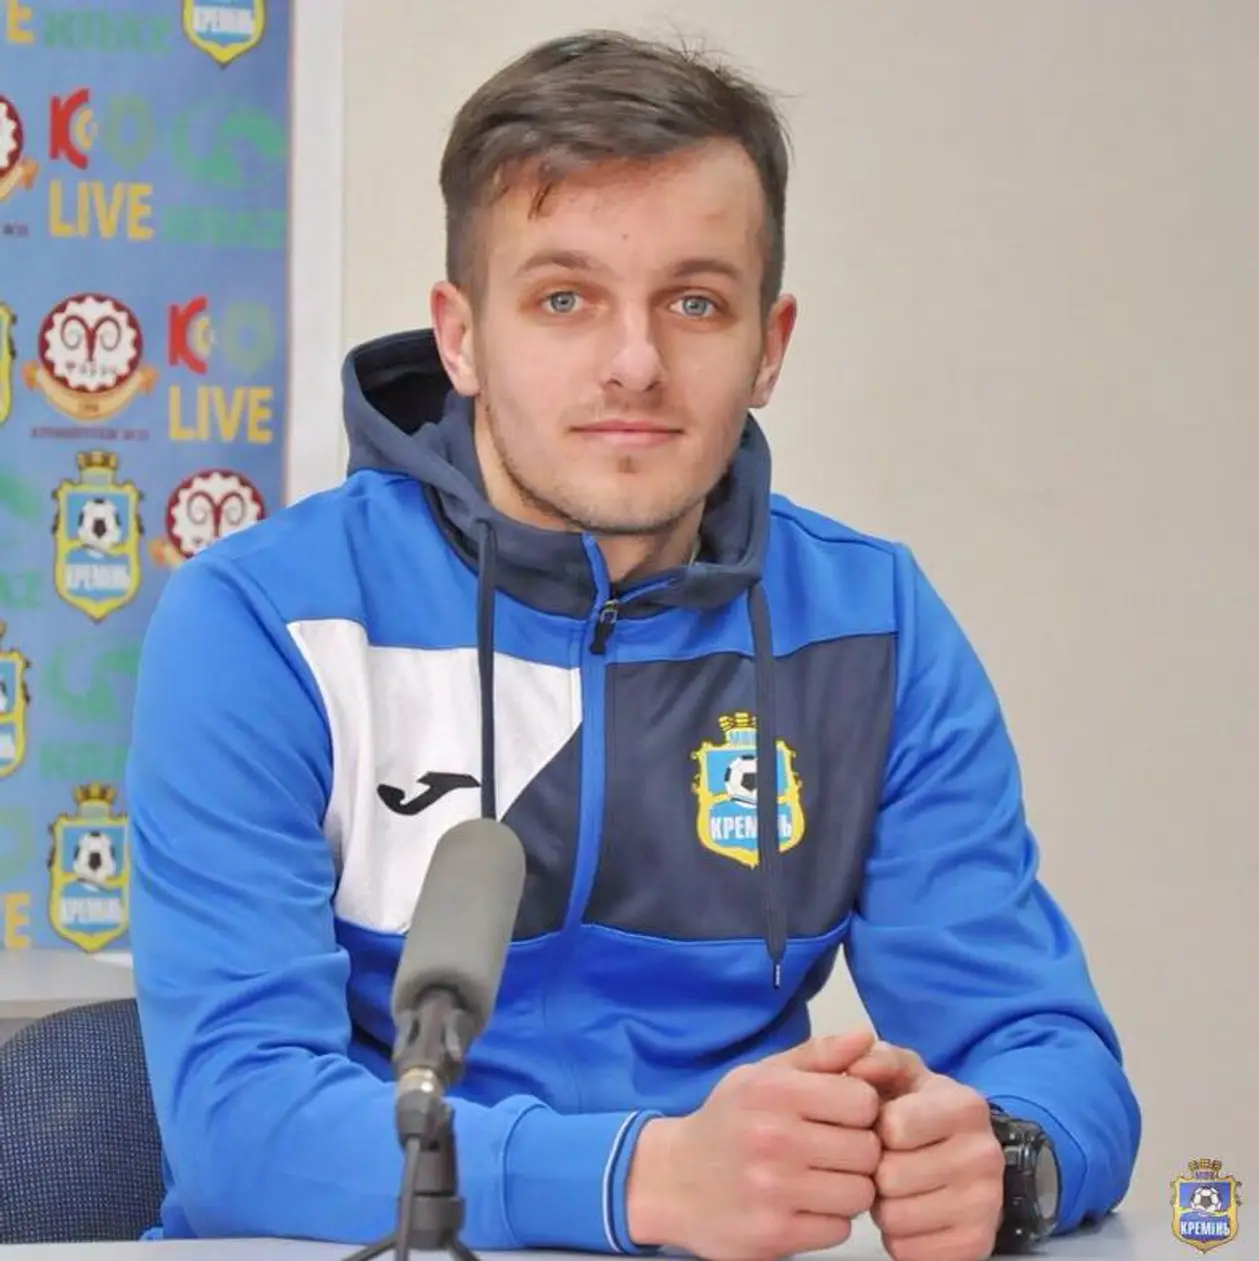 Максим Богданов: «В Каховке есть талантливые тренеры, которые помогут ребенку стать профессиональным футболистом»